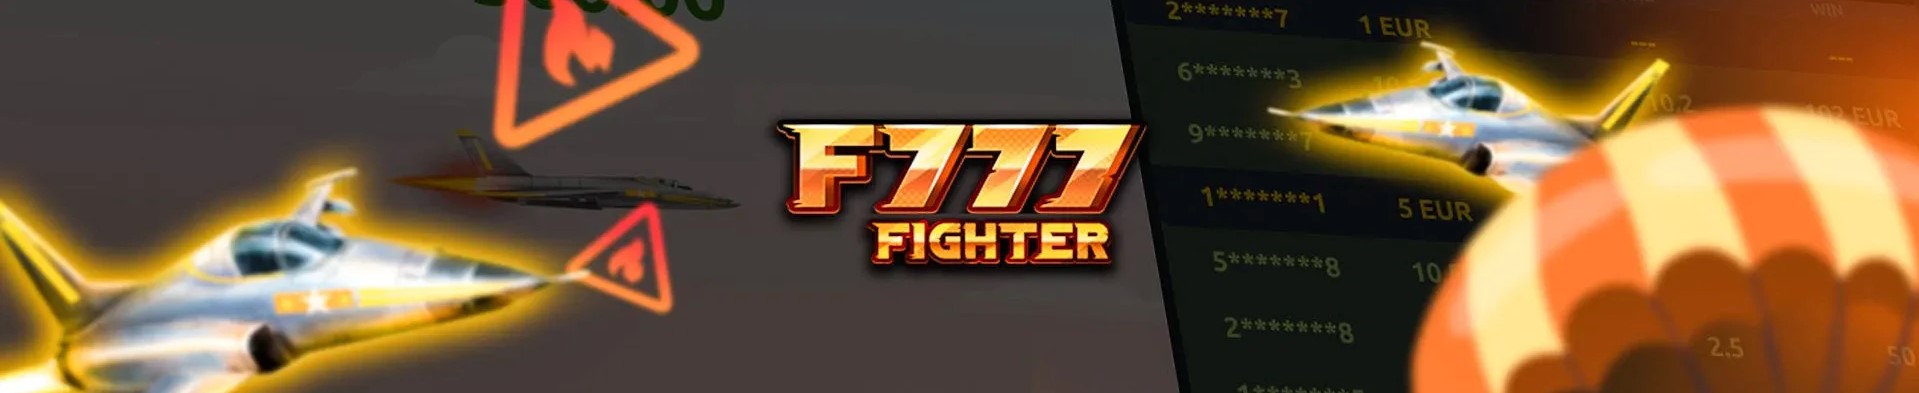 F777 fighter 게임.